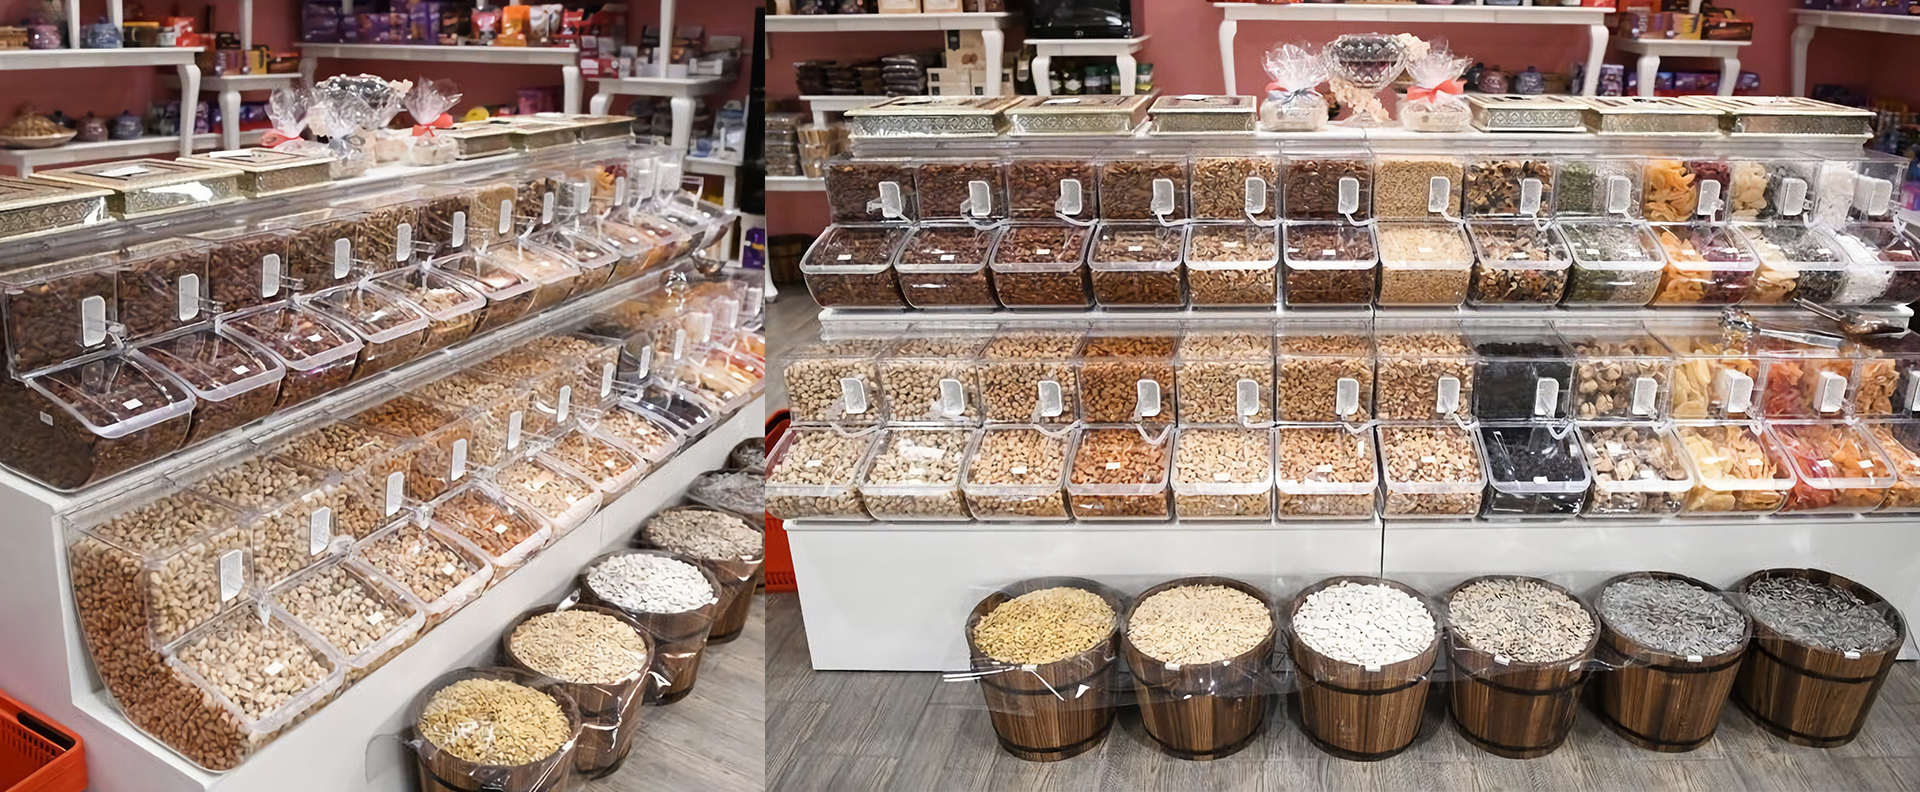 出售高品质零售店糖果盒坚果谷物散装食品重力仓分配器